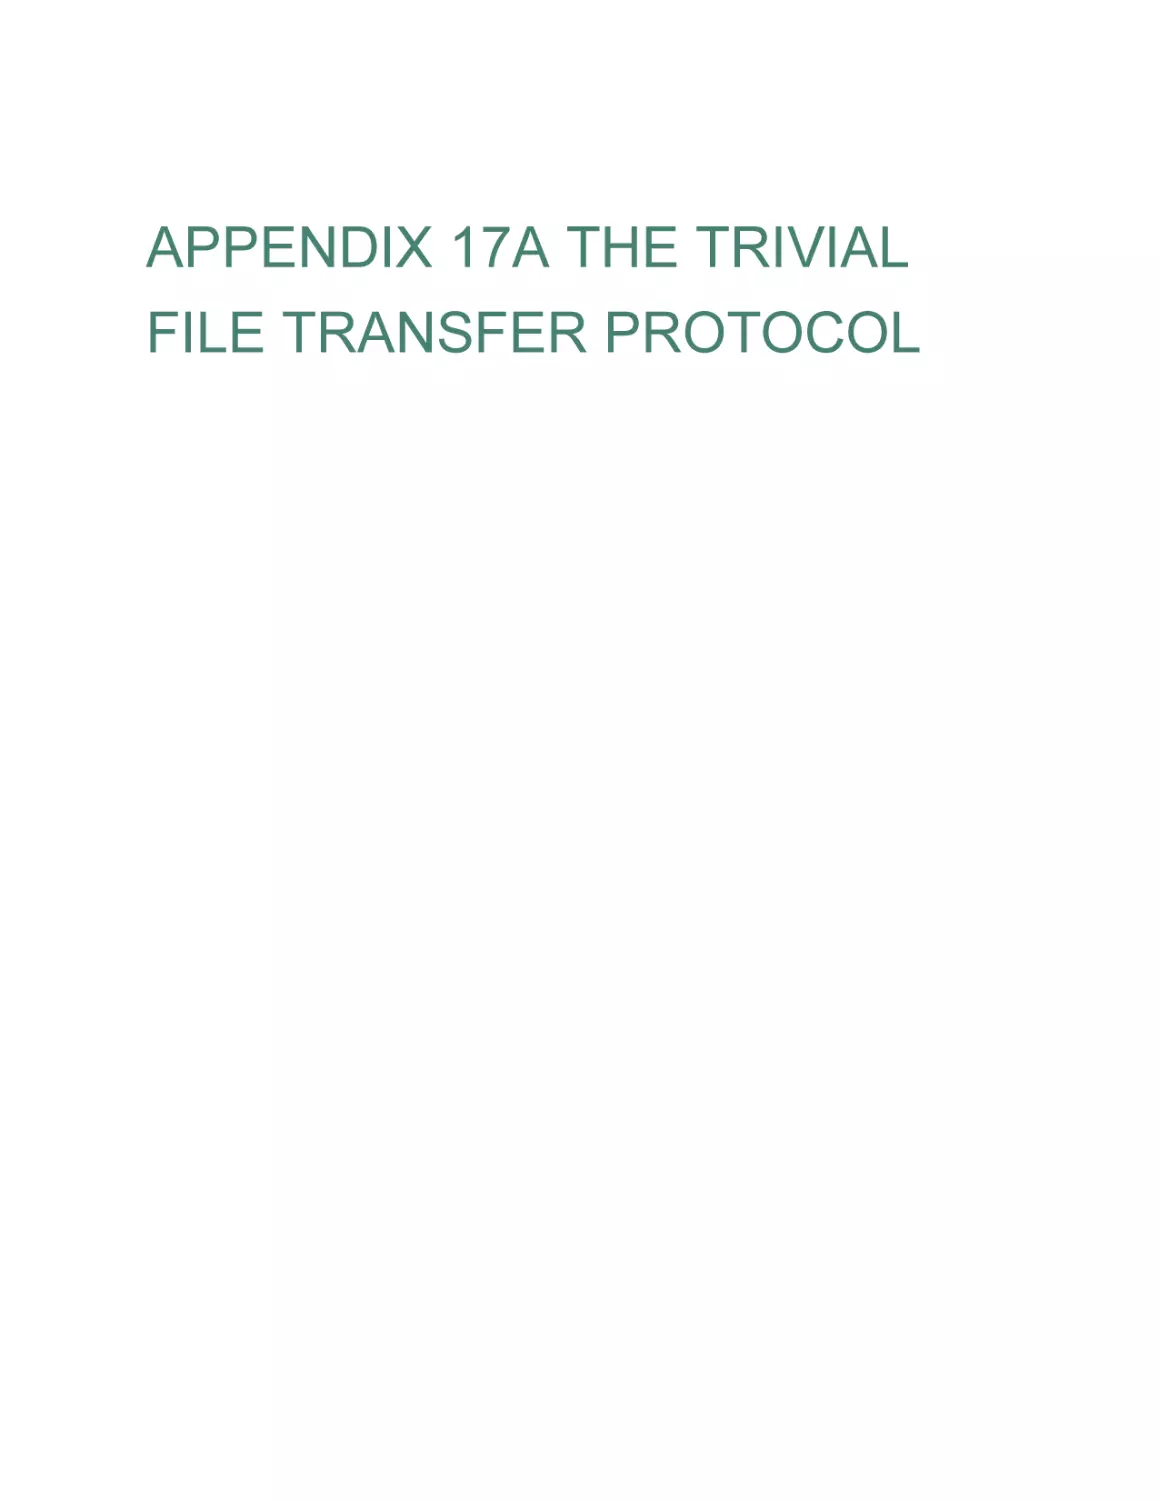 APPENDIX 17A THE TRIVIAL FILE TRANSFER PROTOCOL